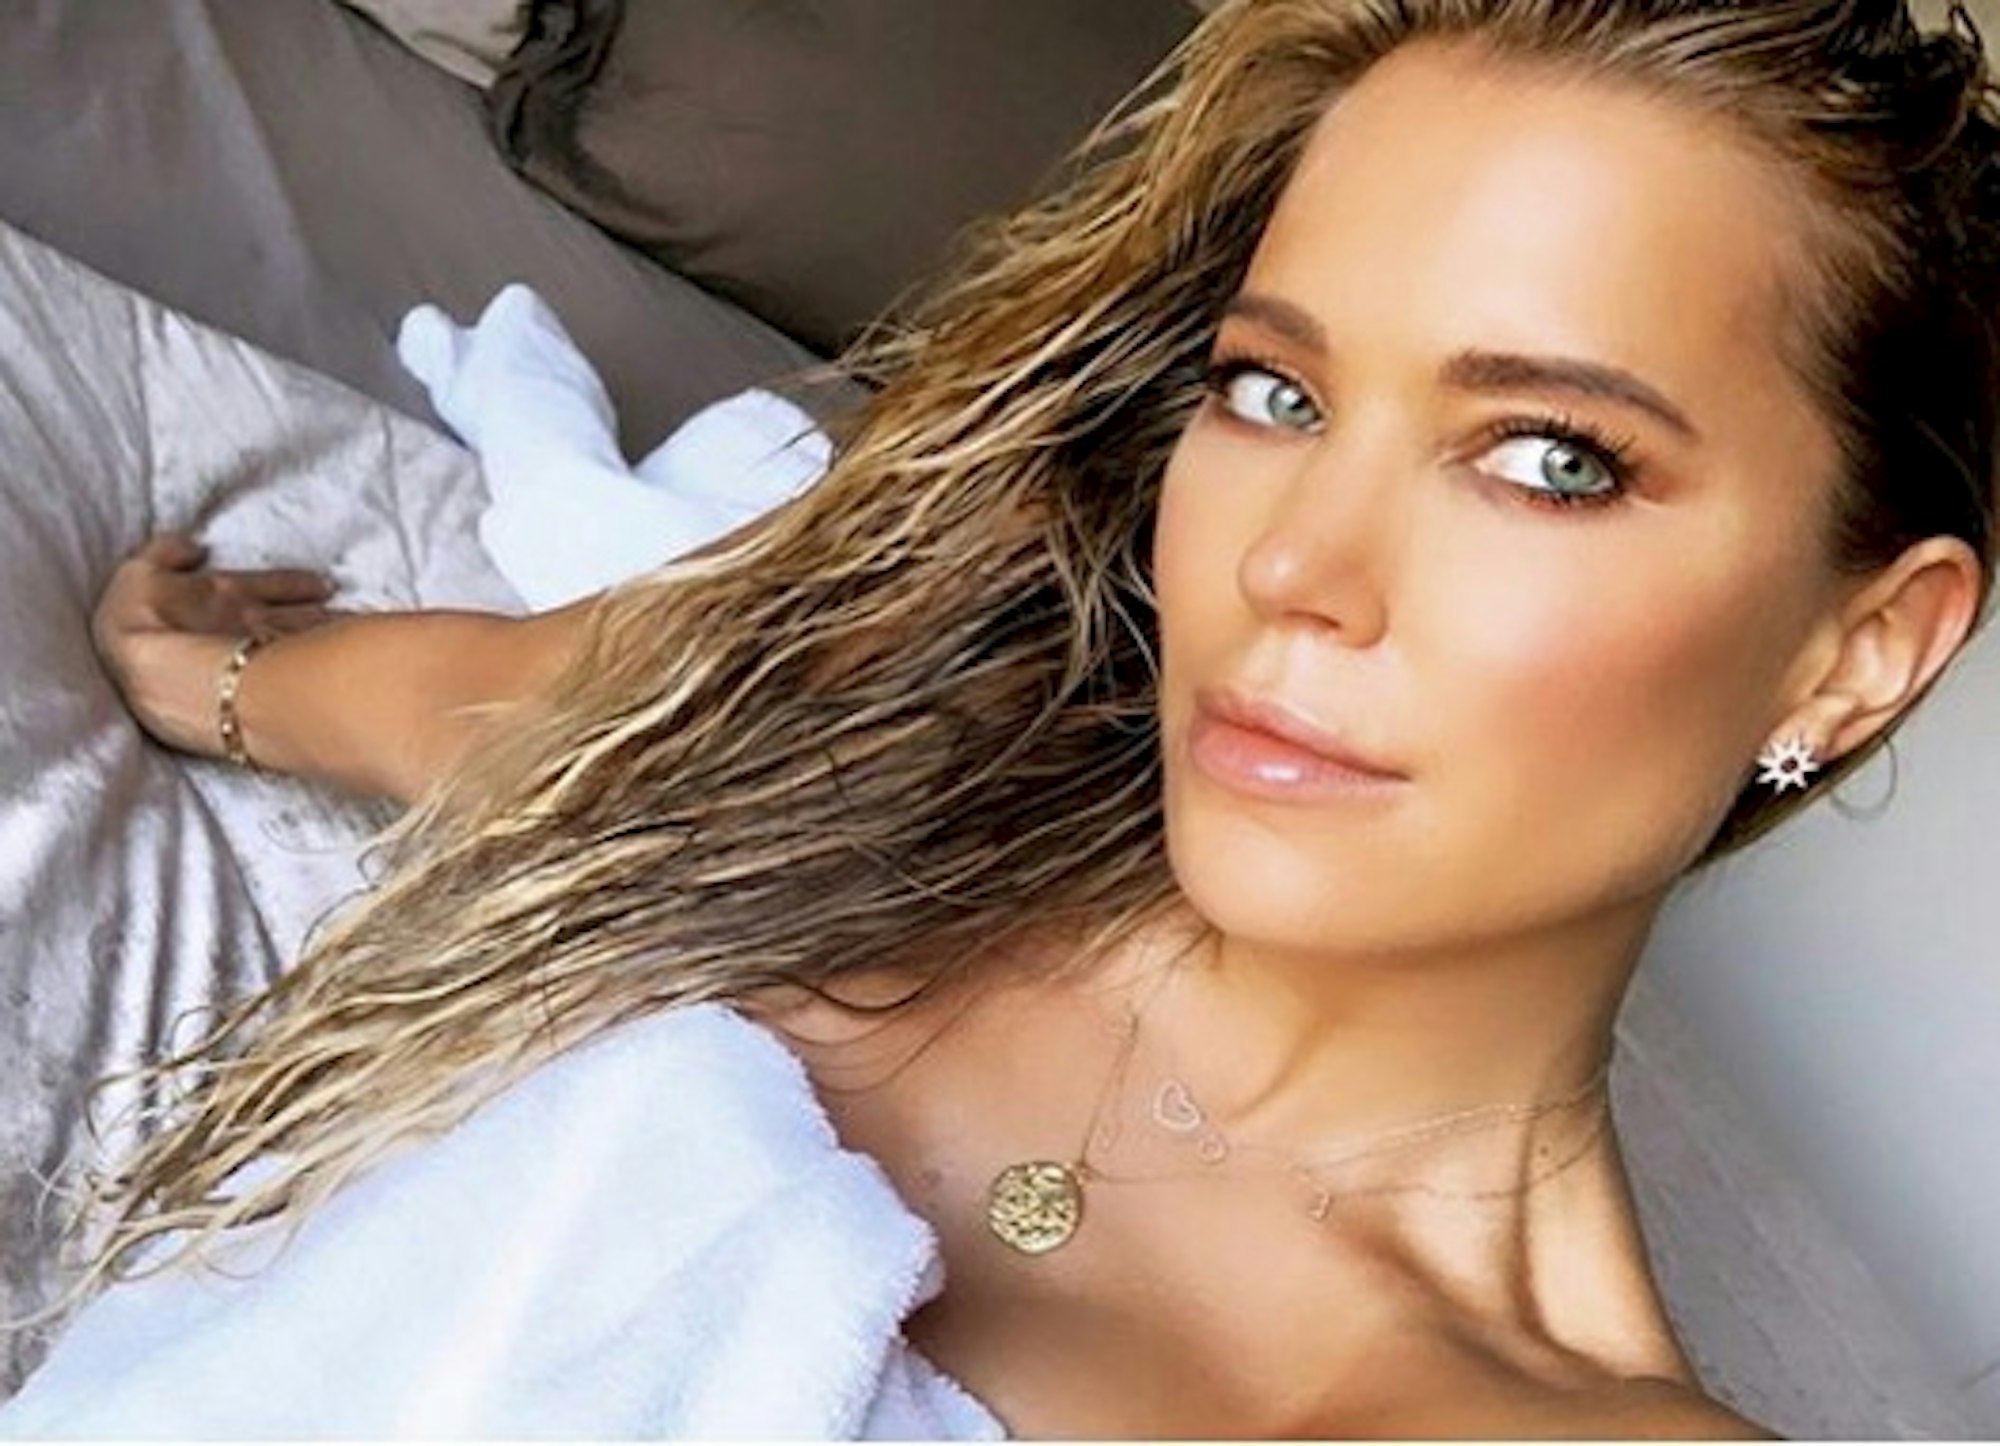 Sylvie Meis postete dieses Selfie mit nassen Haaren im September 2019 auf ihrem Instagram-Account